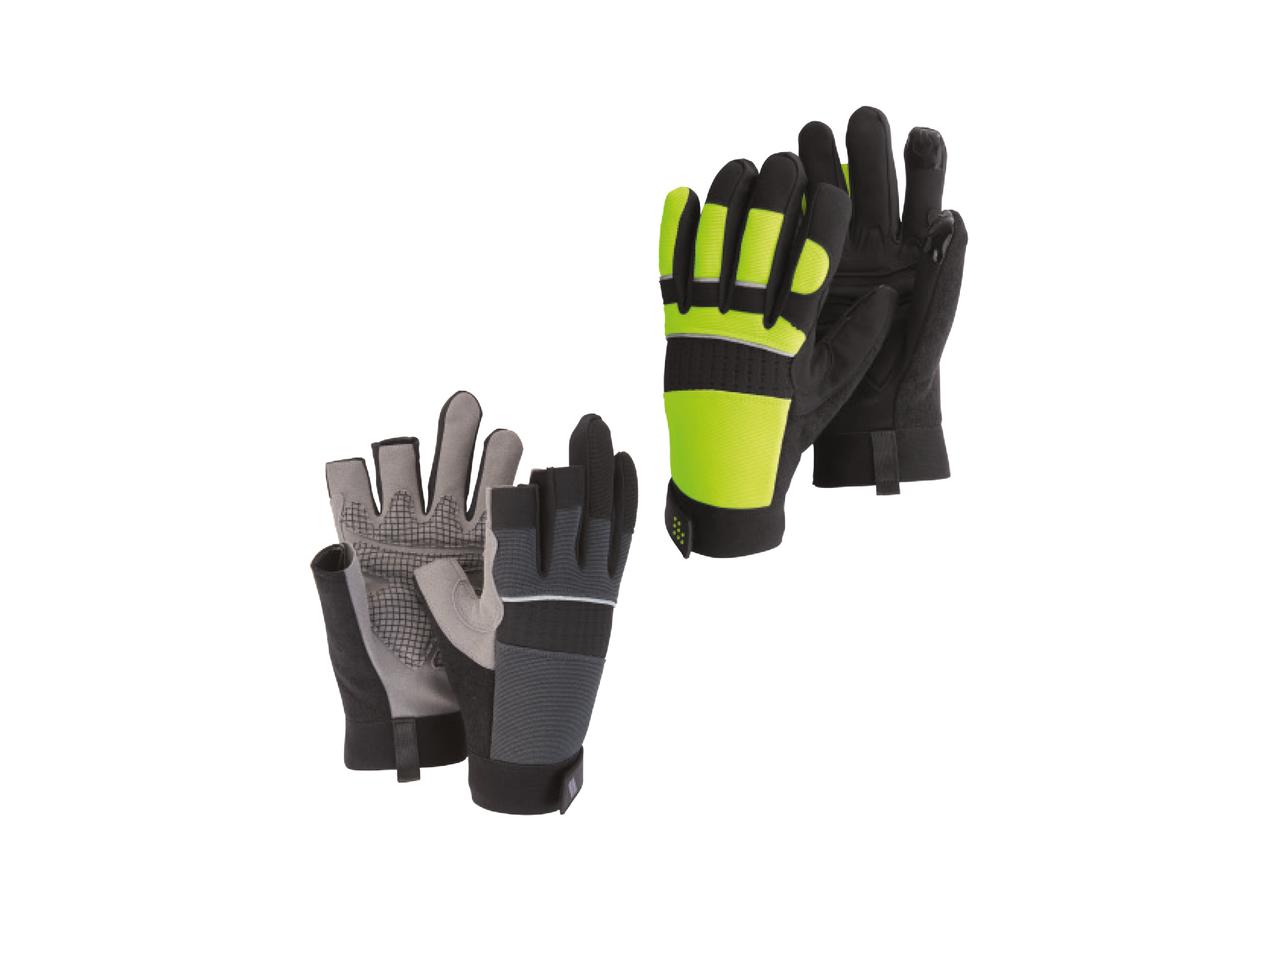 POWERFIX(R) Professional Work Gloves